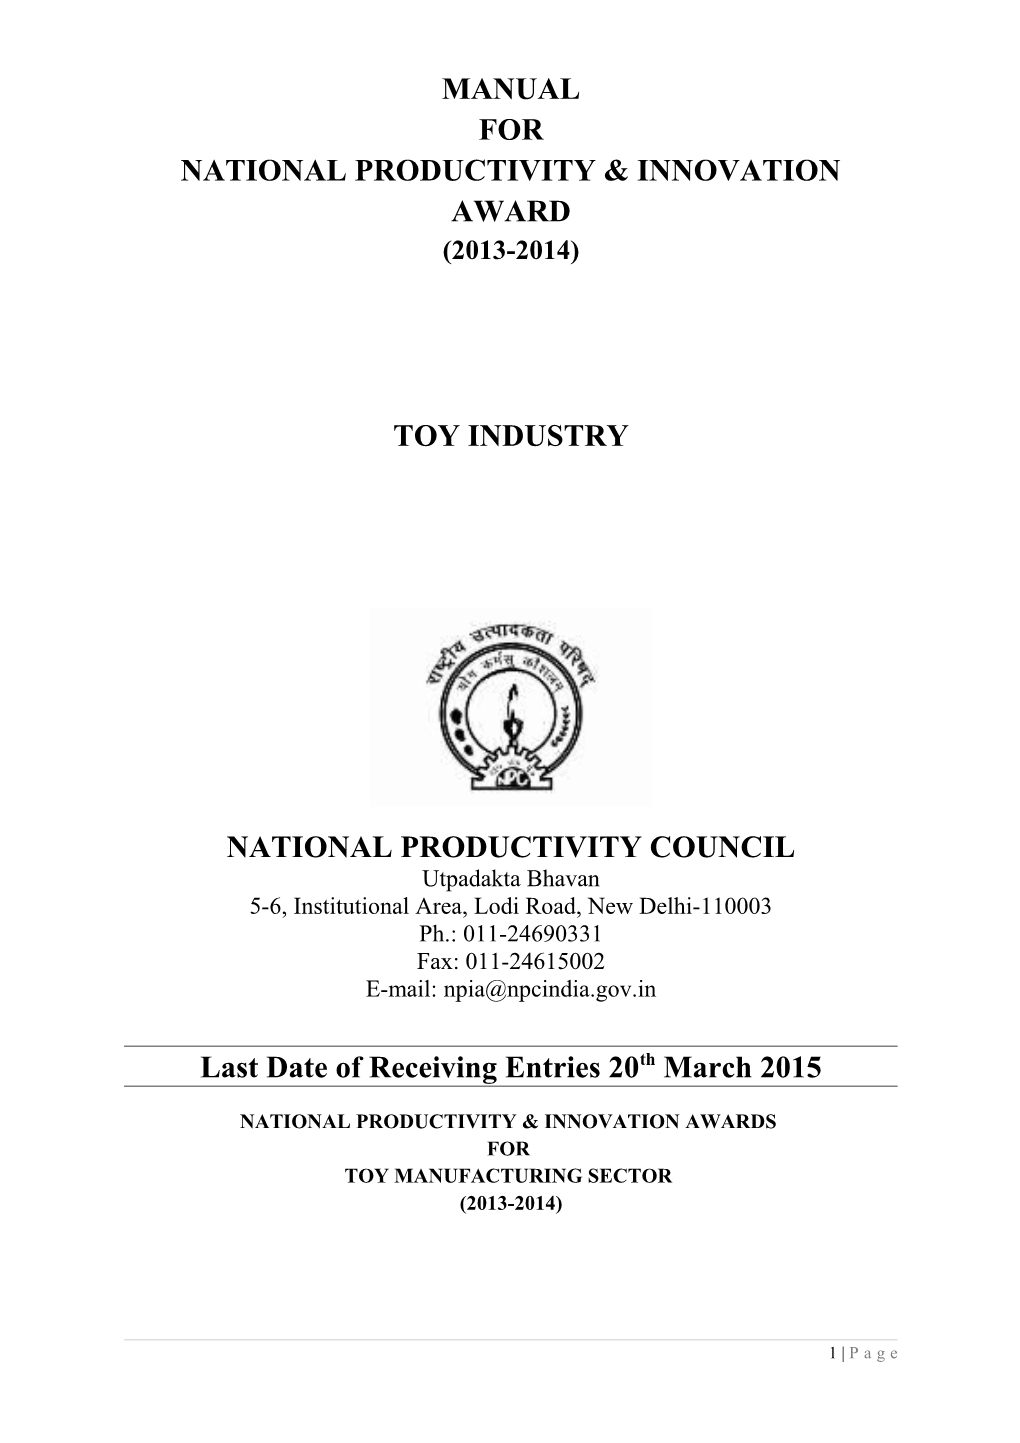 National Productivity & Innovation Award